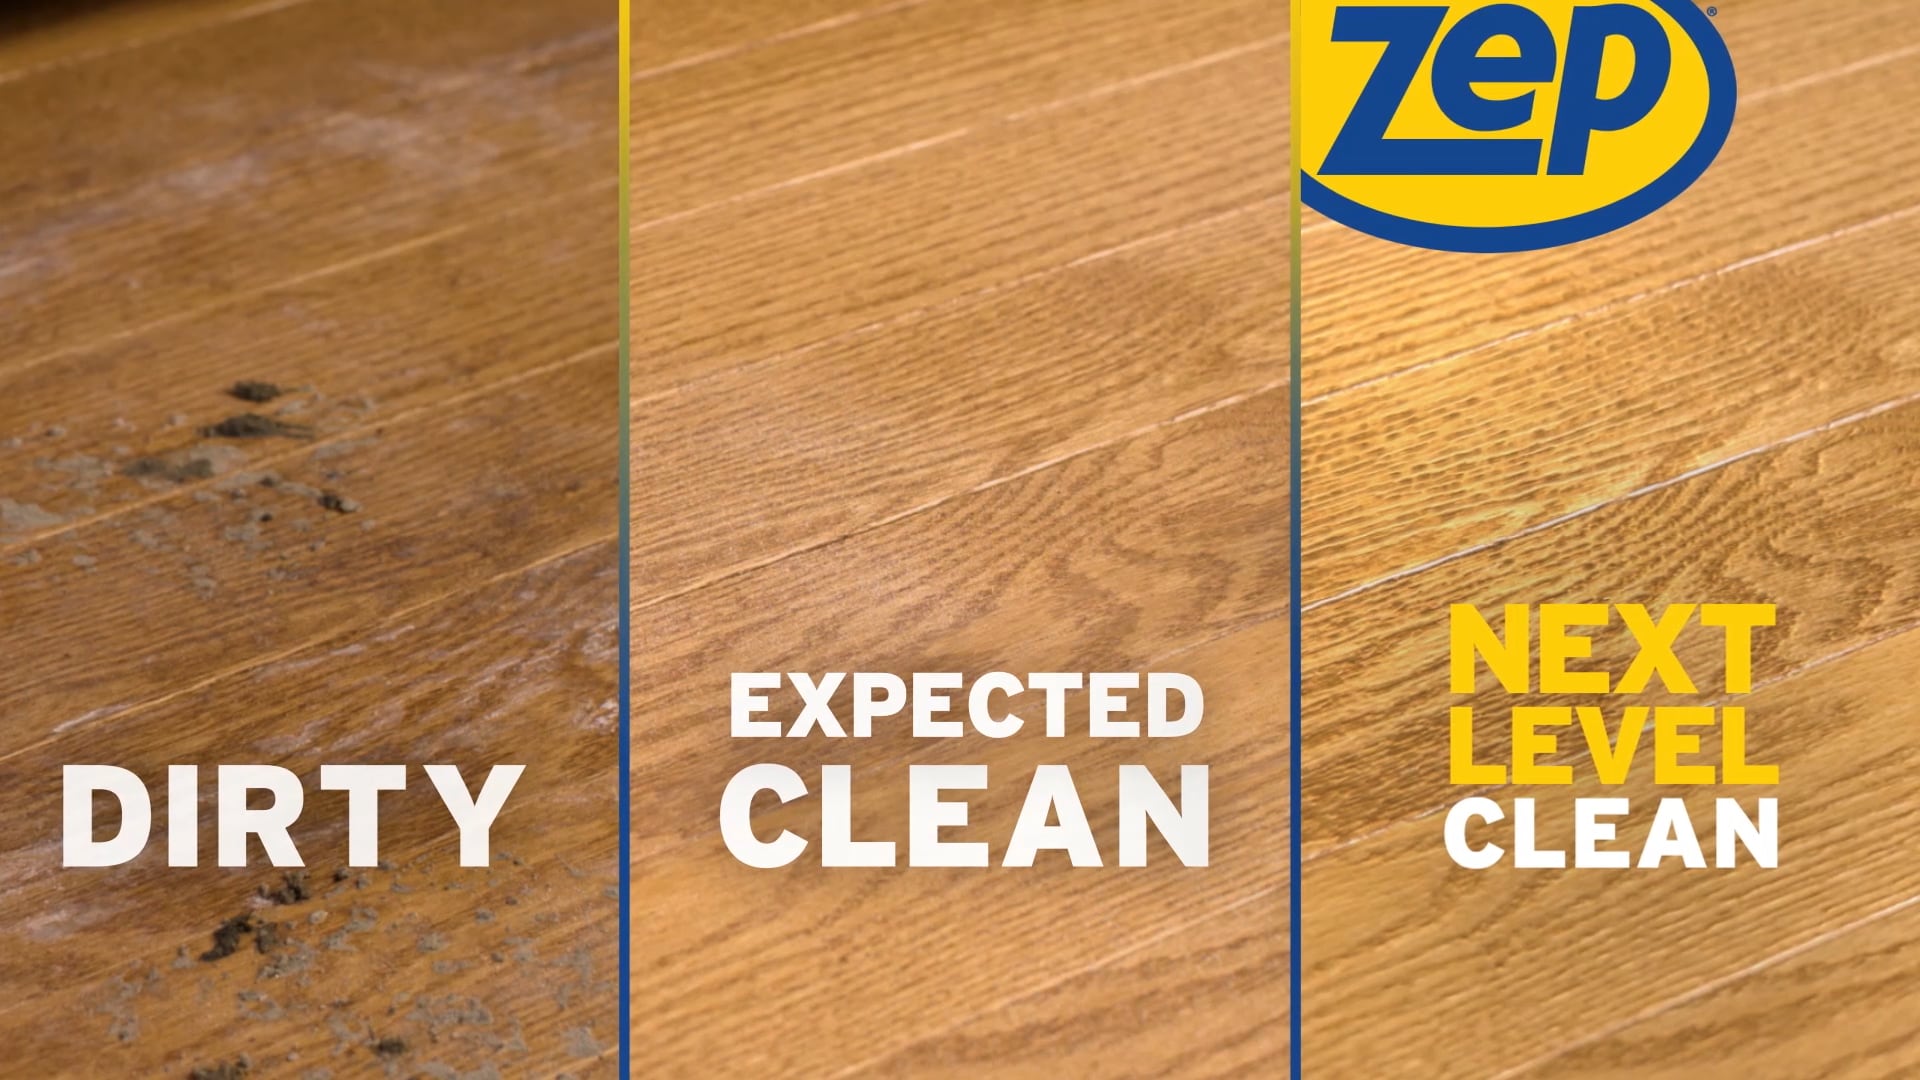 Zep Commercial Hardwood & Laminate Floor Cleaner 